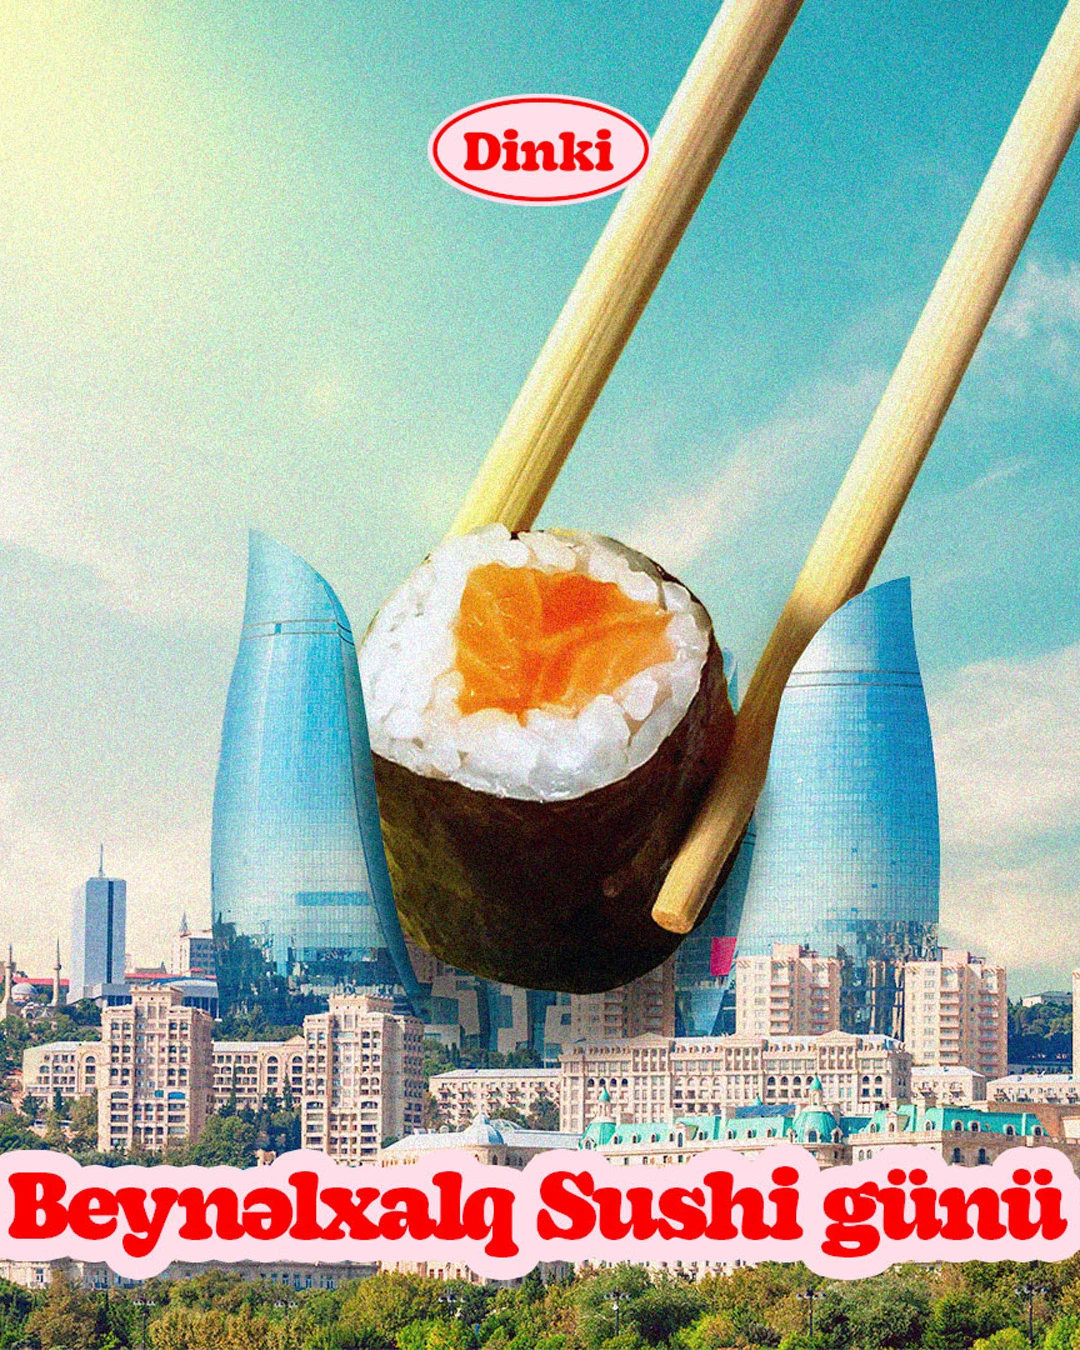 Dinki Food - Social Media Poster